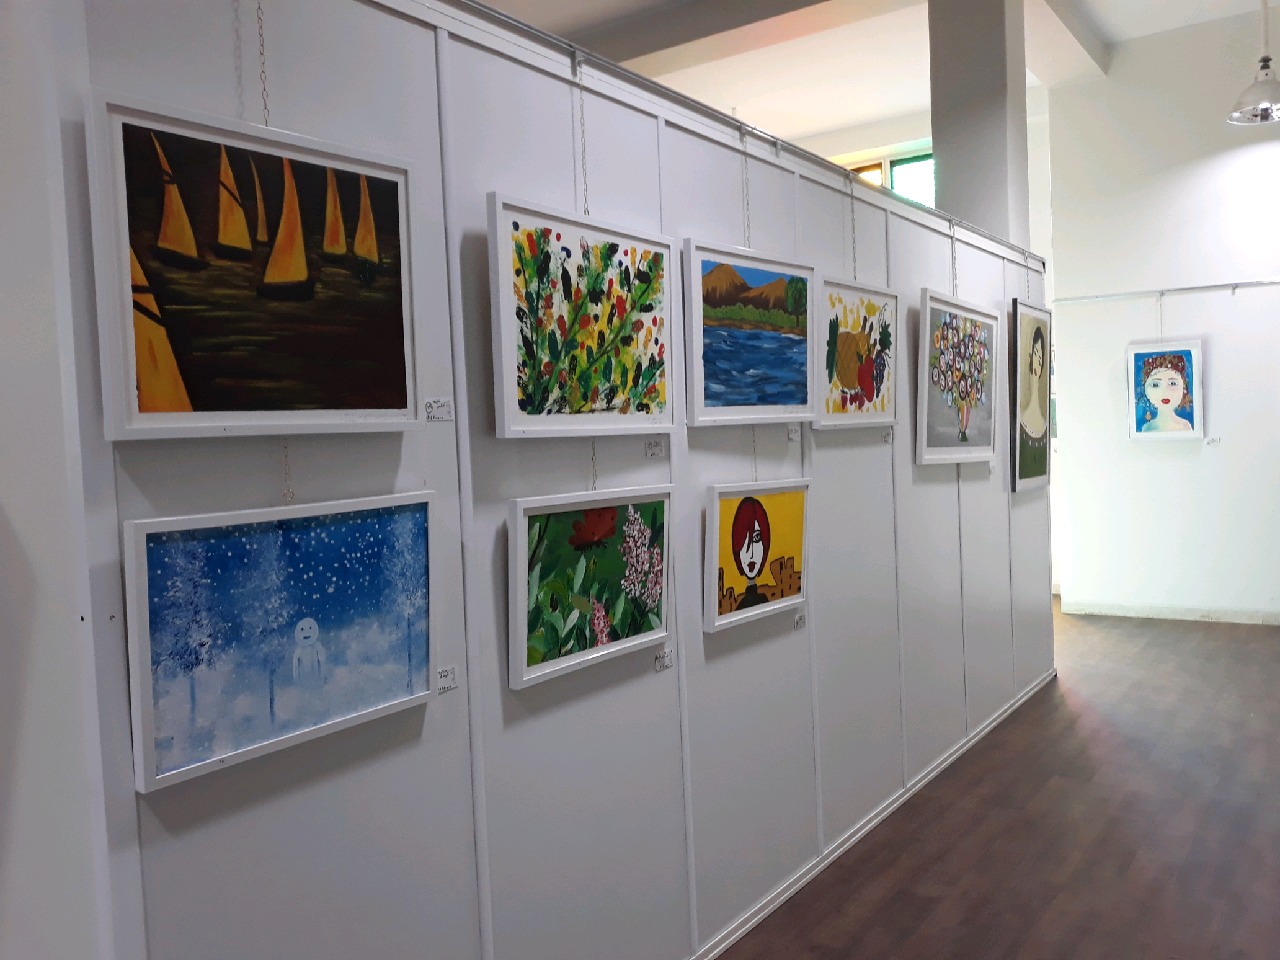  نمایشگاه آثار هنری نقاش آران و بیدگلی در فضای مجازی برپا شد